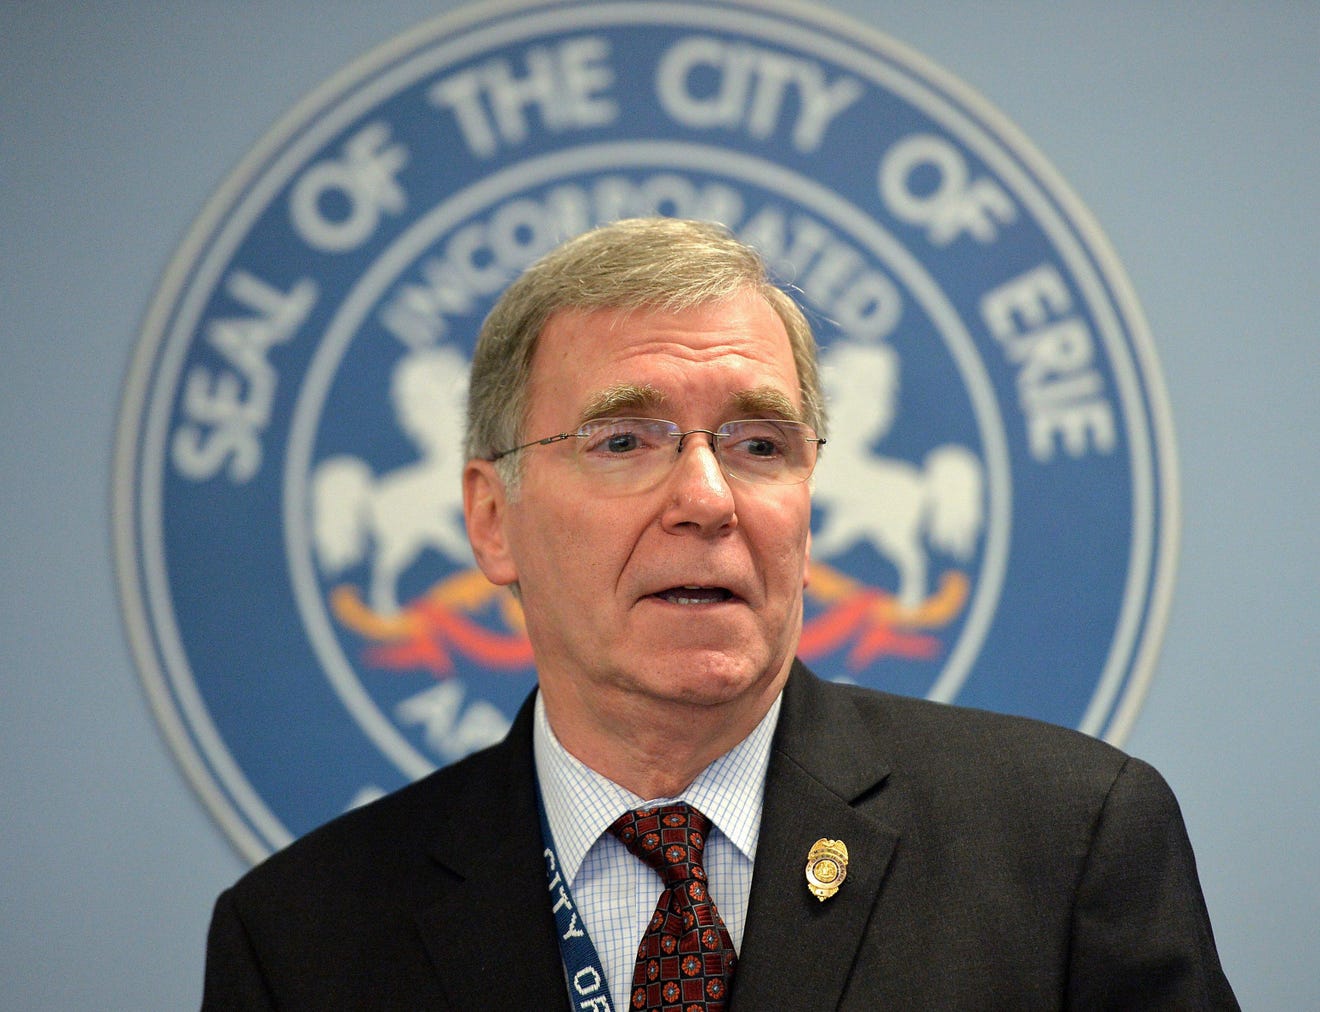 Erie Mayor Joe Schember seeks reelection